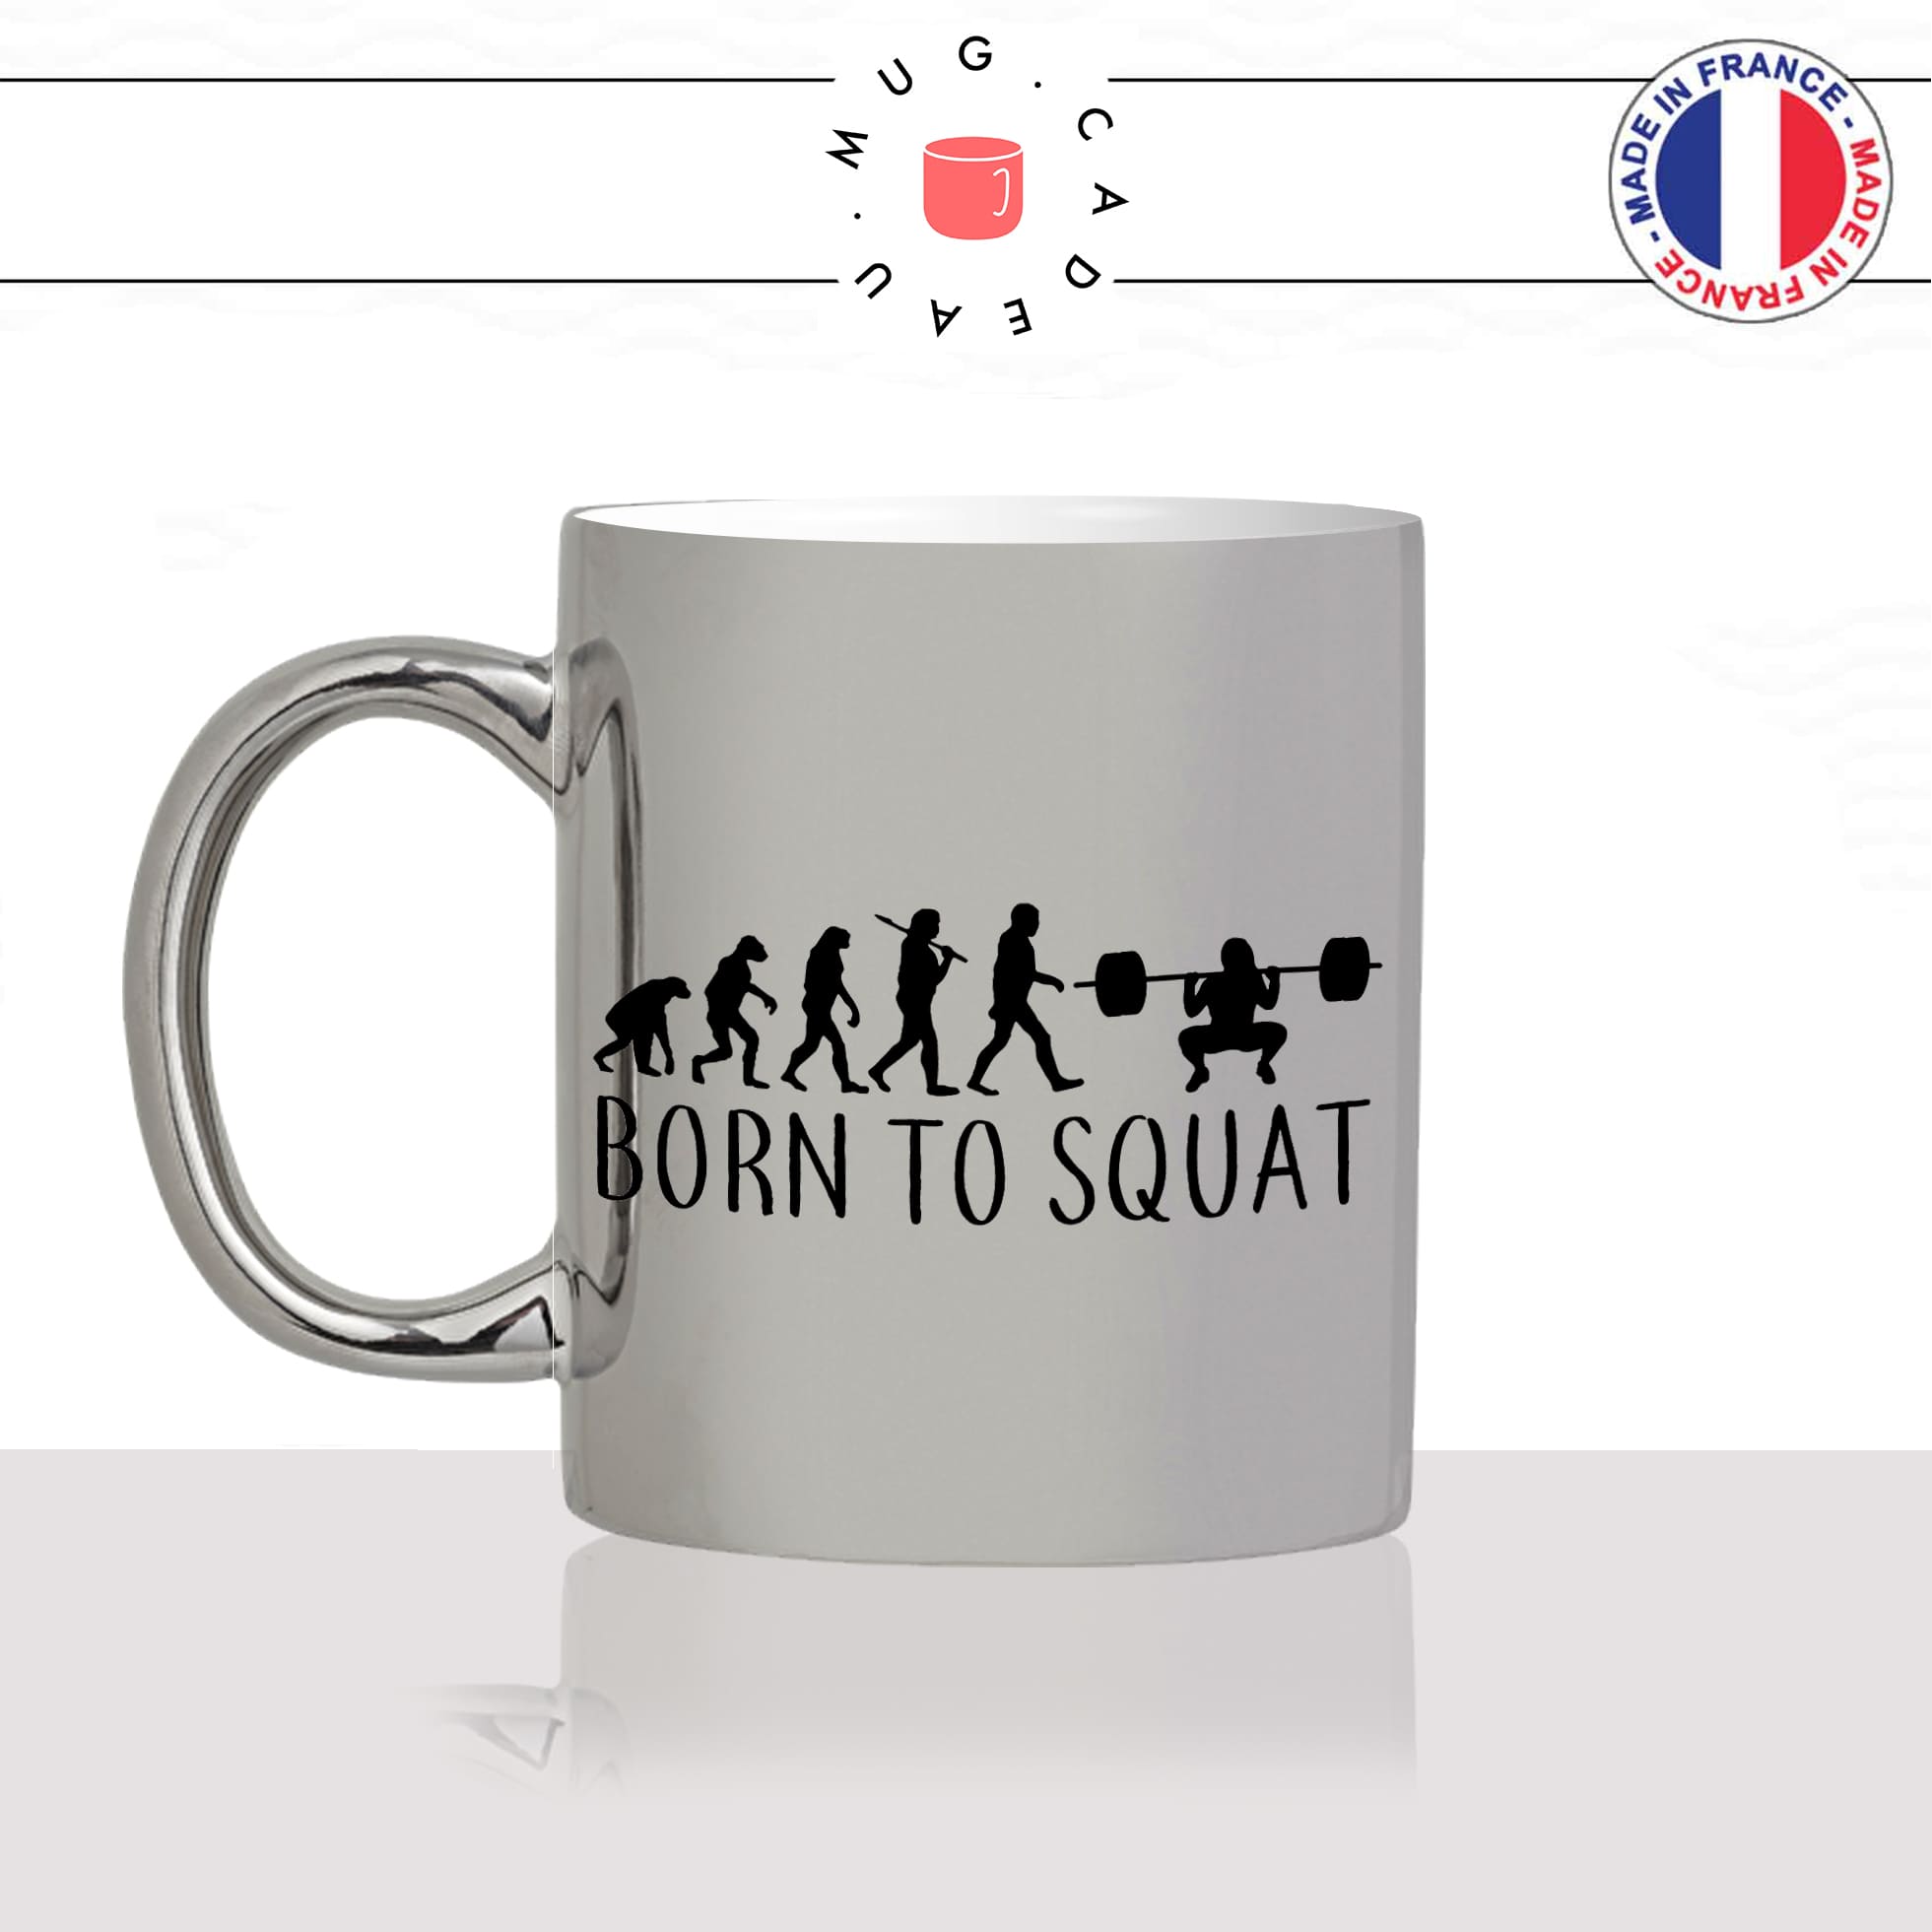 mug-tasse-argent-argenté-silver-born-to-squat-evolution-humaine-sport-fitness-fitgirl-glute-musculation-humour-idée-cadeau-fun-cool-café-thé